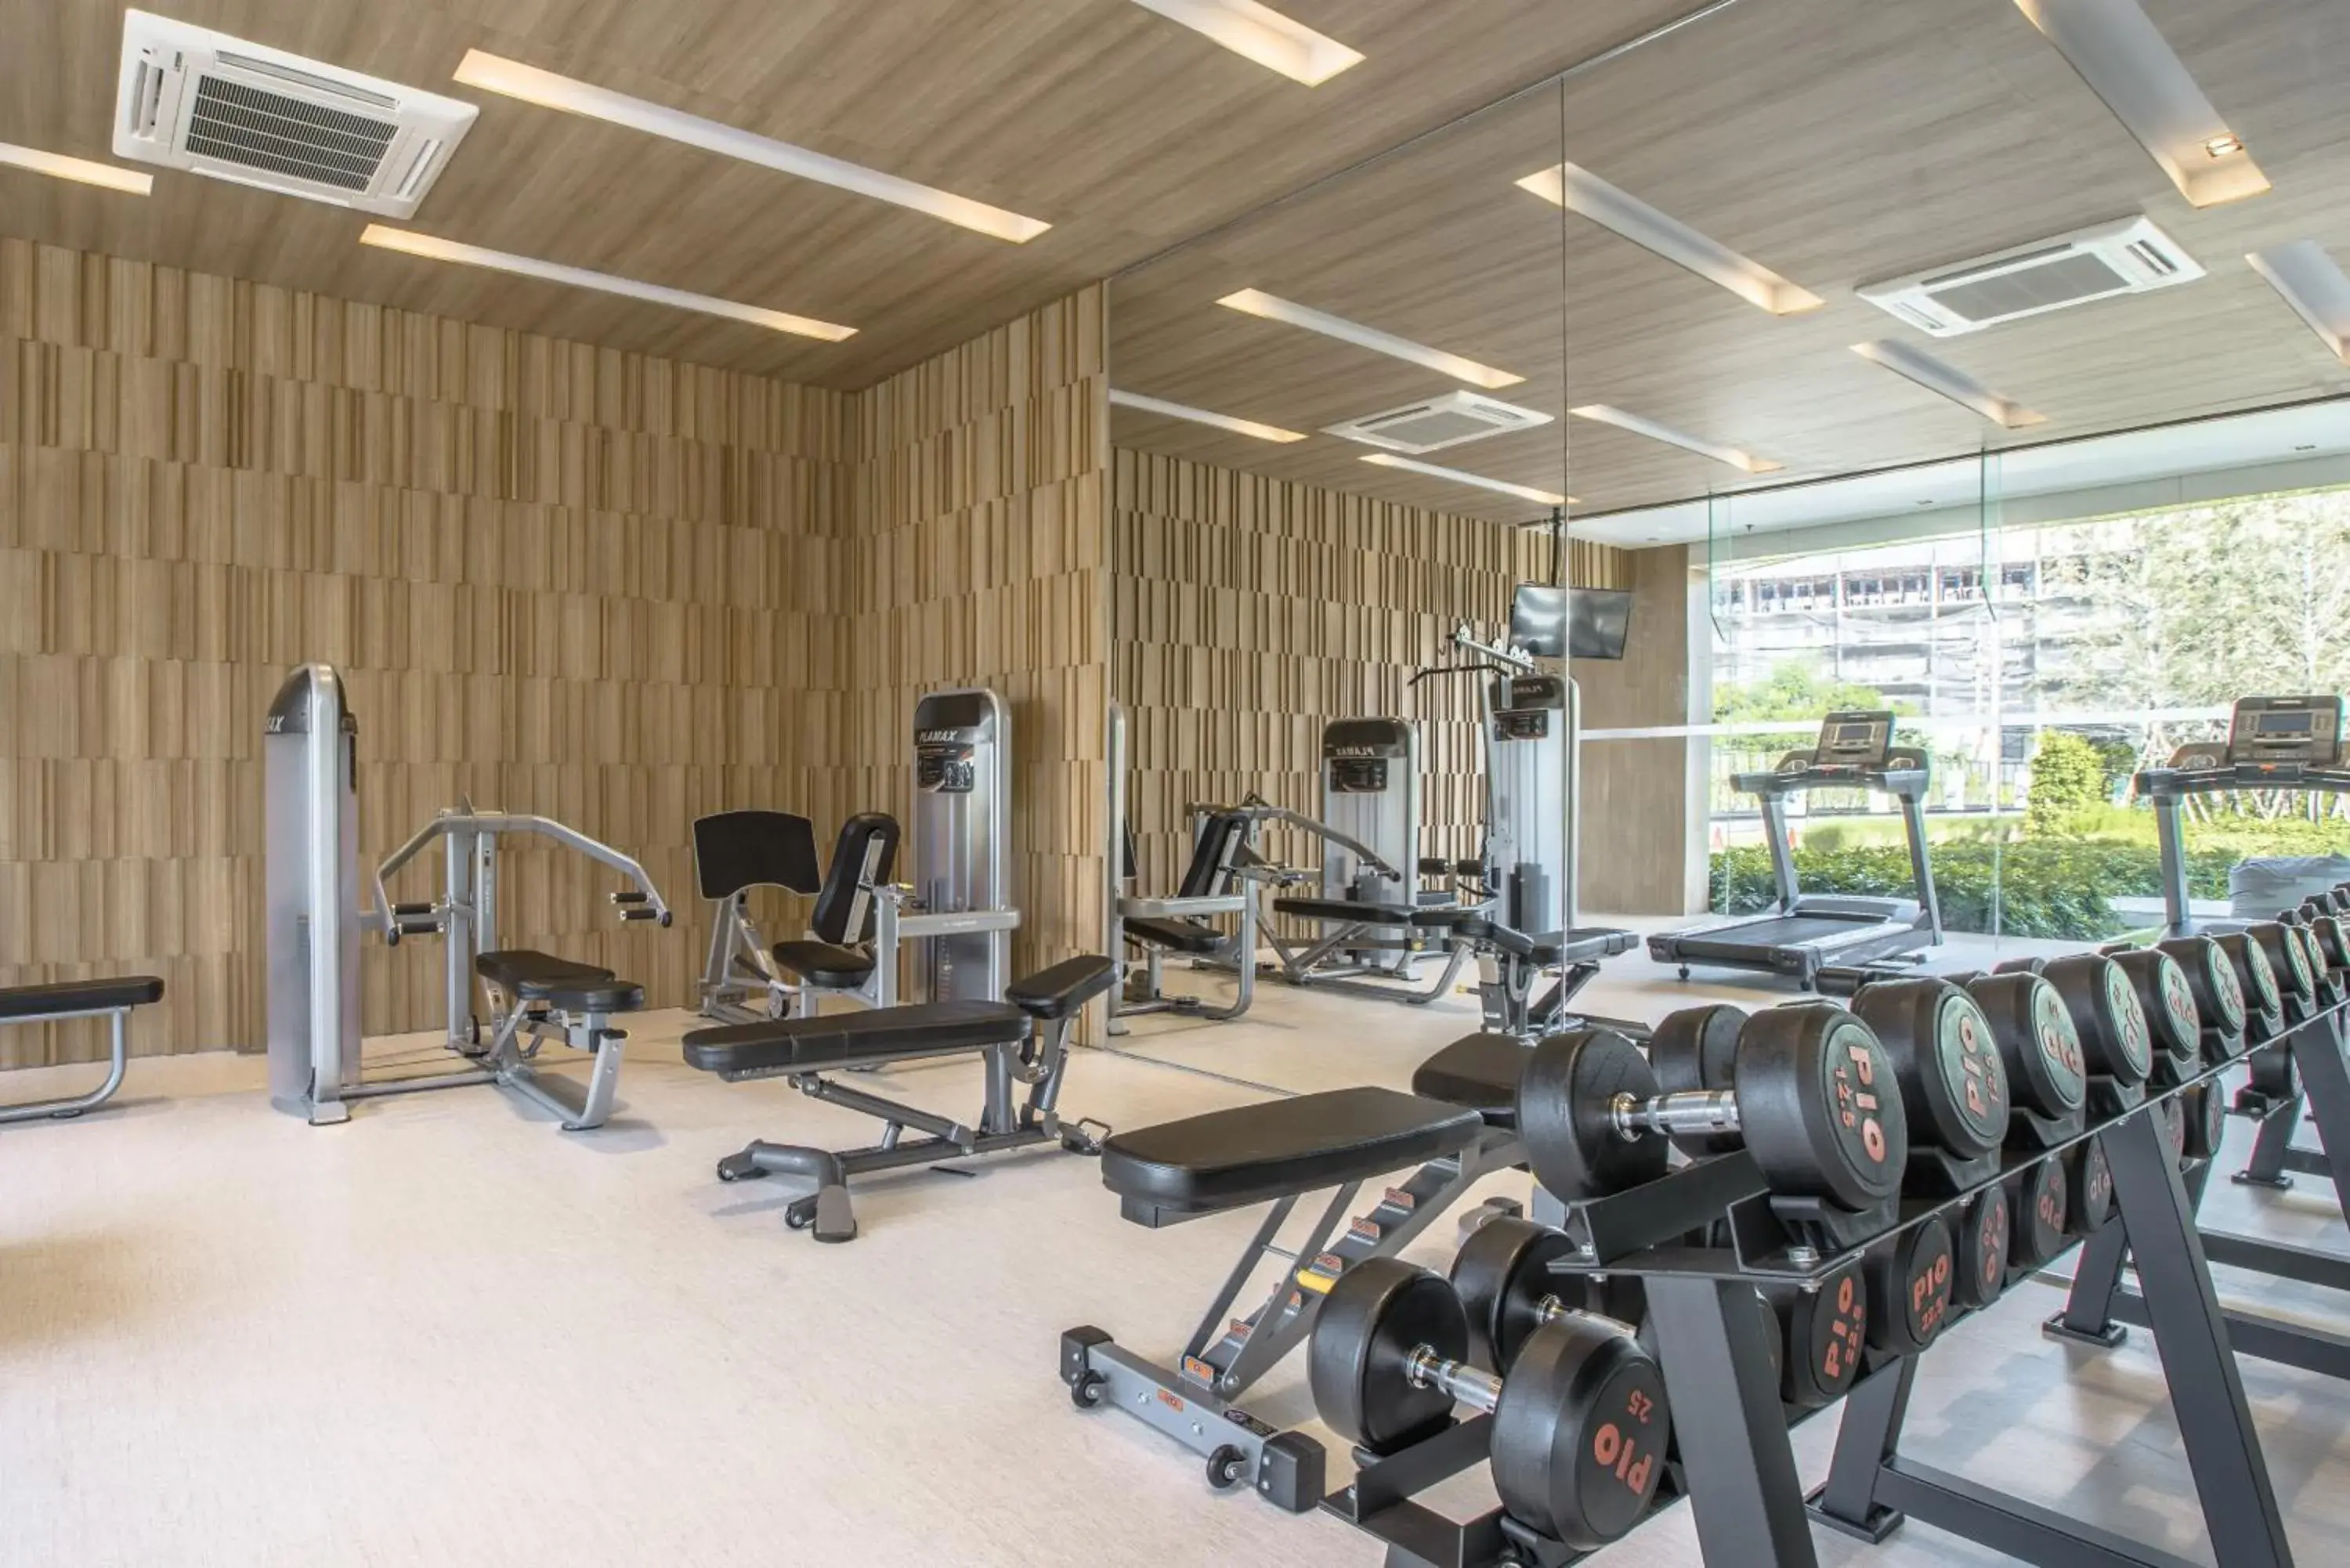 Fitness centre/facilities, Fitness Center/Facilities in Veranda Residence Pattaya